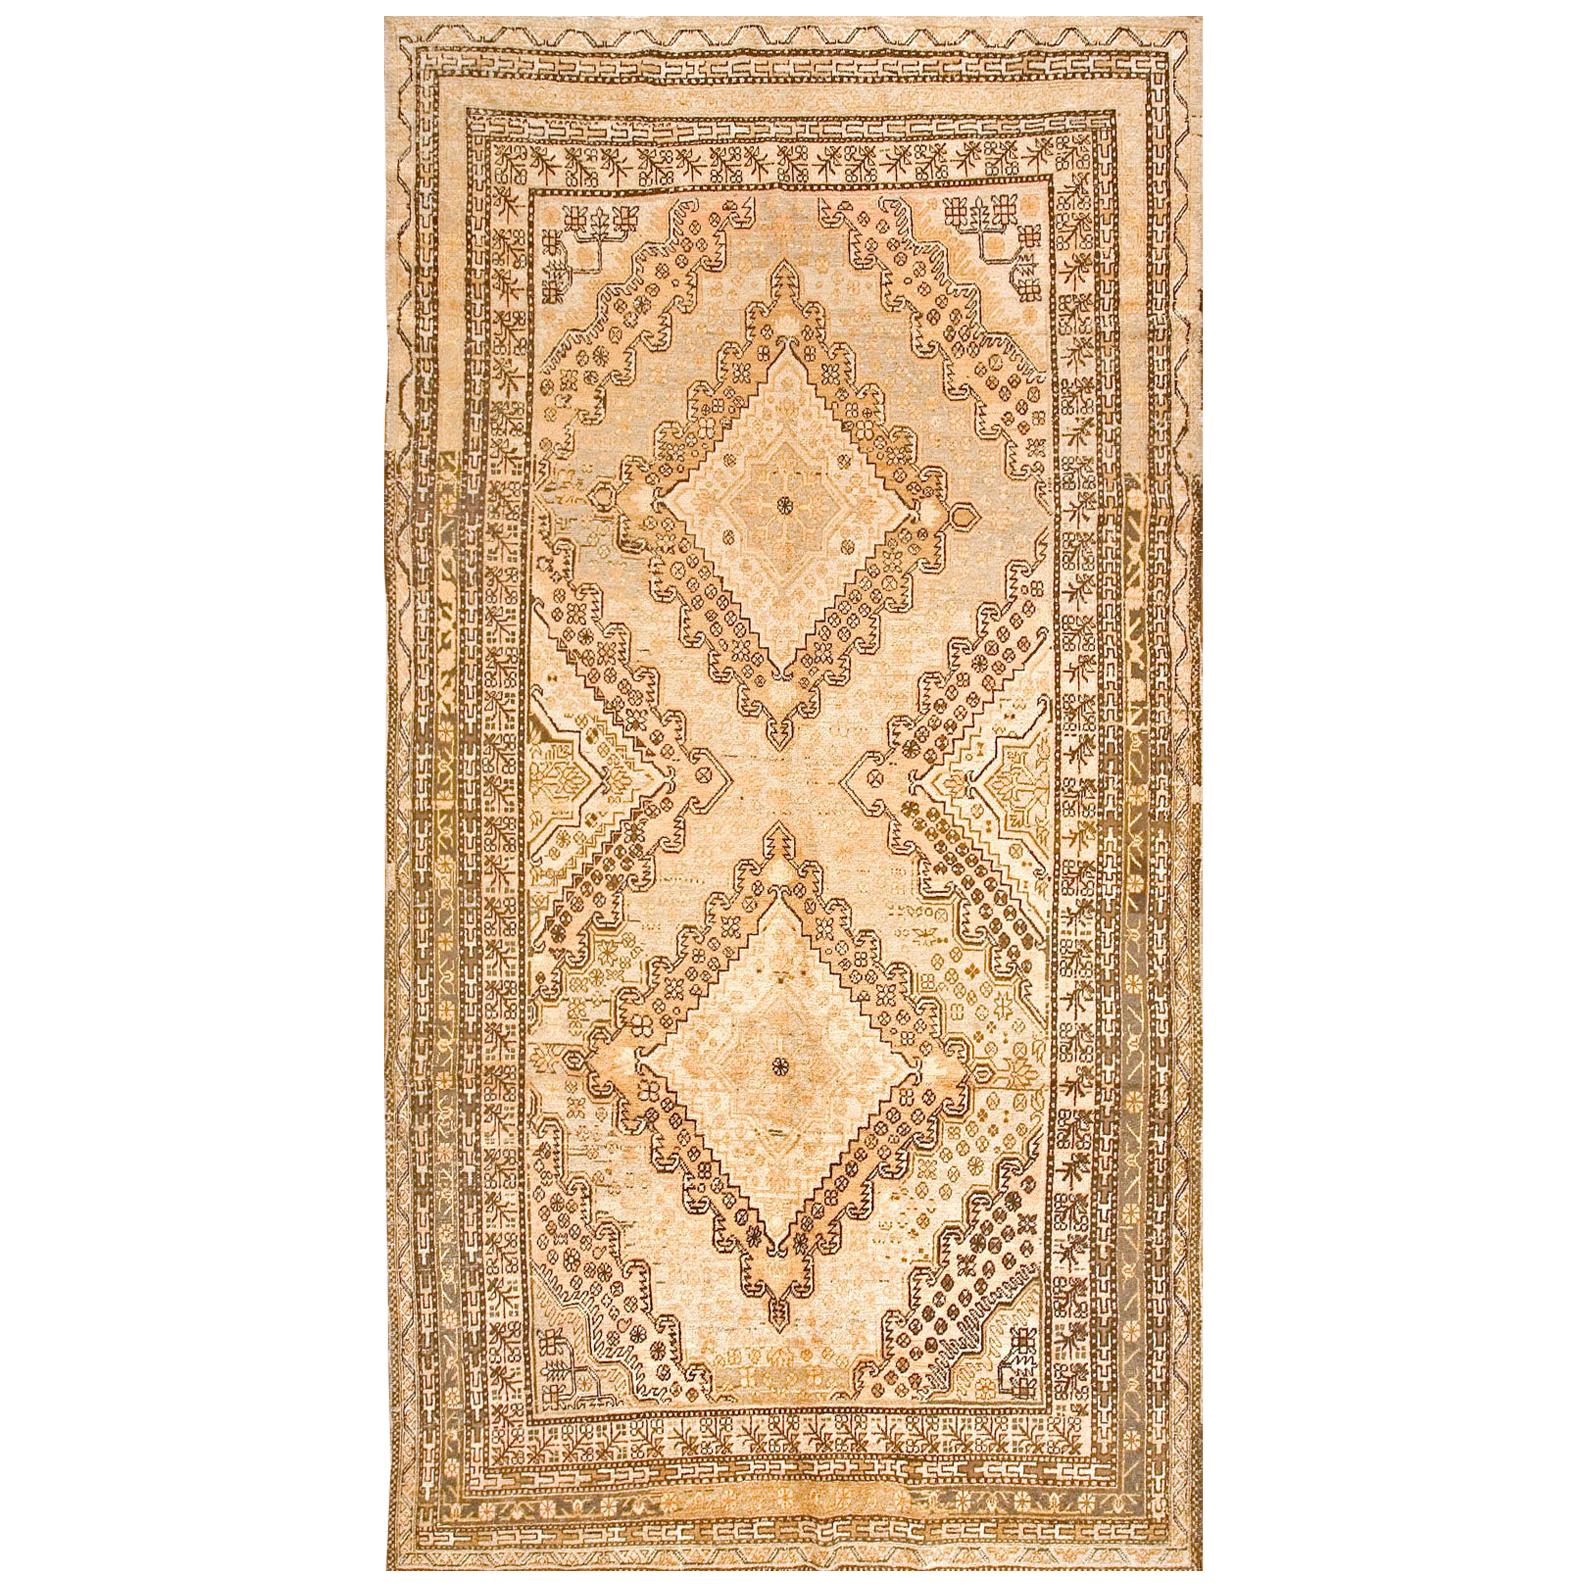 1930s Central Asian Khotan Carpet ( 7'9" x 13'9" - 236 x 419 ) For Sale